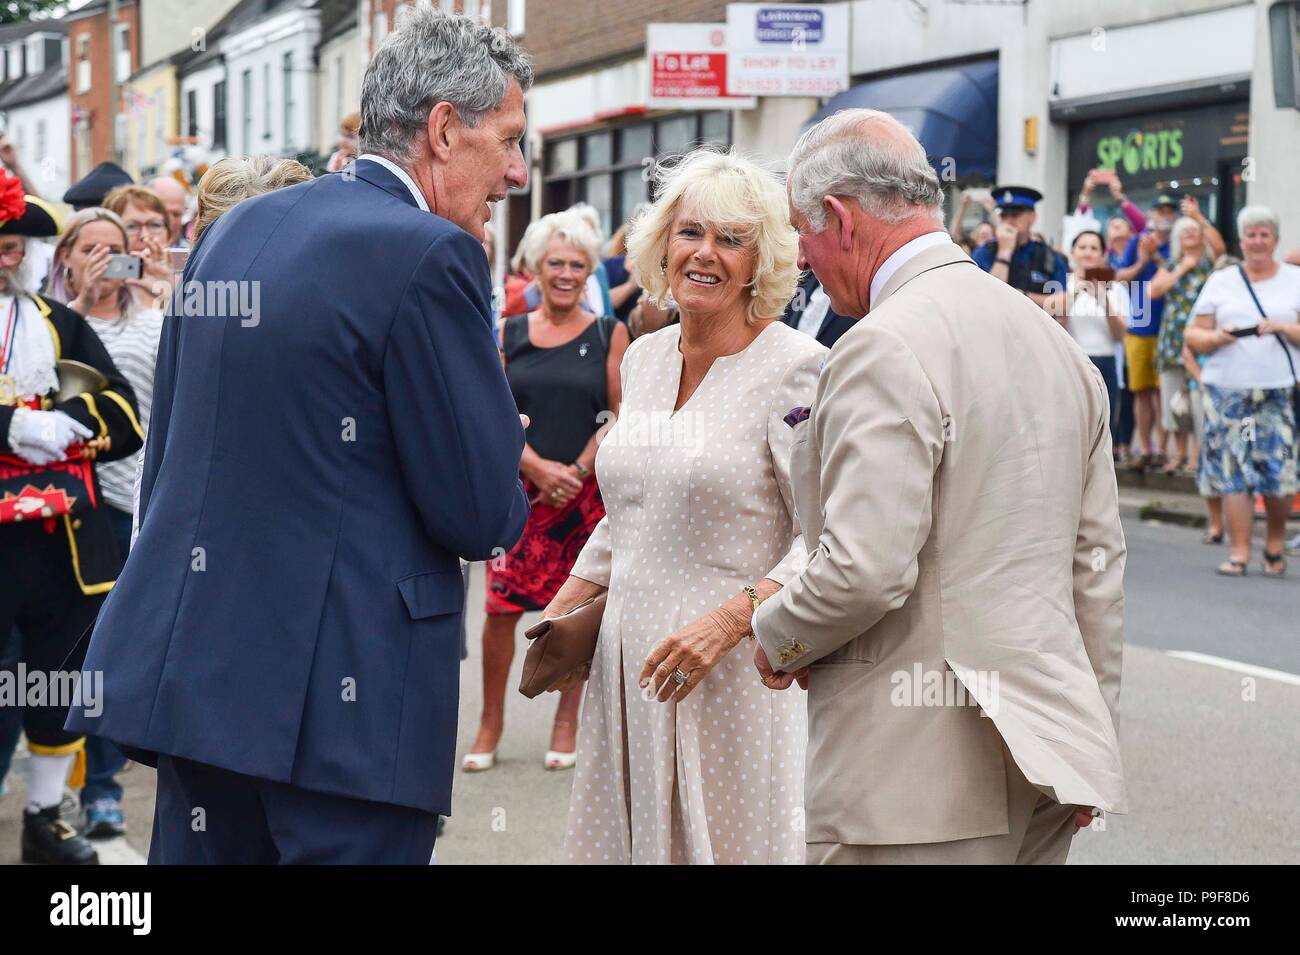 Honiton, Devon, UK. 18 juillet 2018. Le duc et la duchesse de Cornouailles visiter la porte à l'assiette food market à Honiton dans le Devon. Le couple royal arrivent. Crédit photo : Graham Hunt/Alamy Live News Banque D'Images